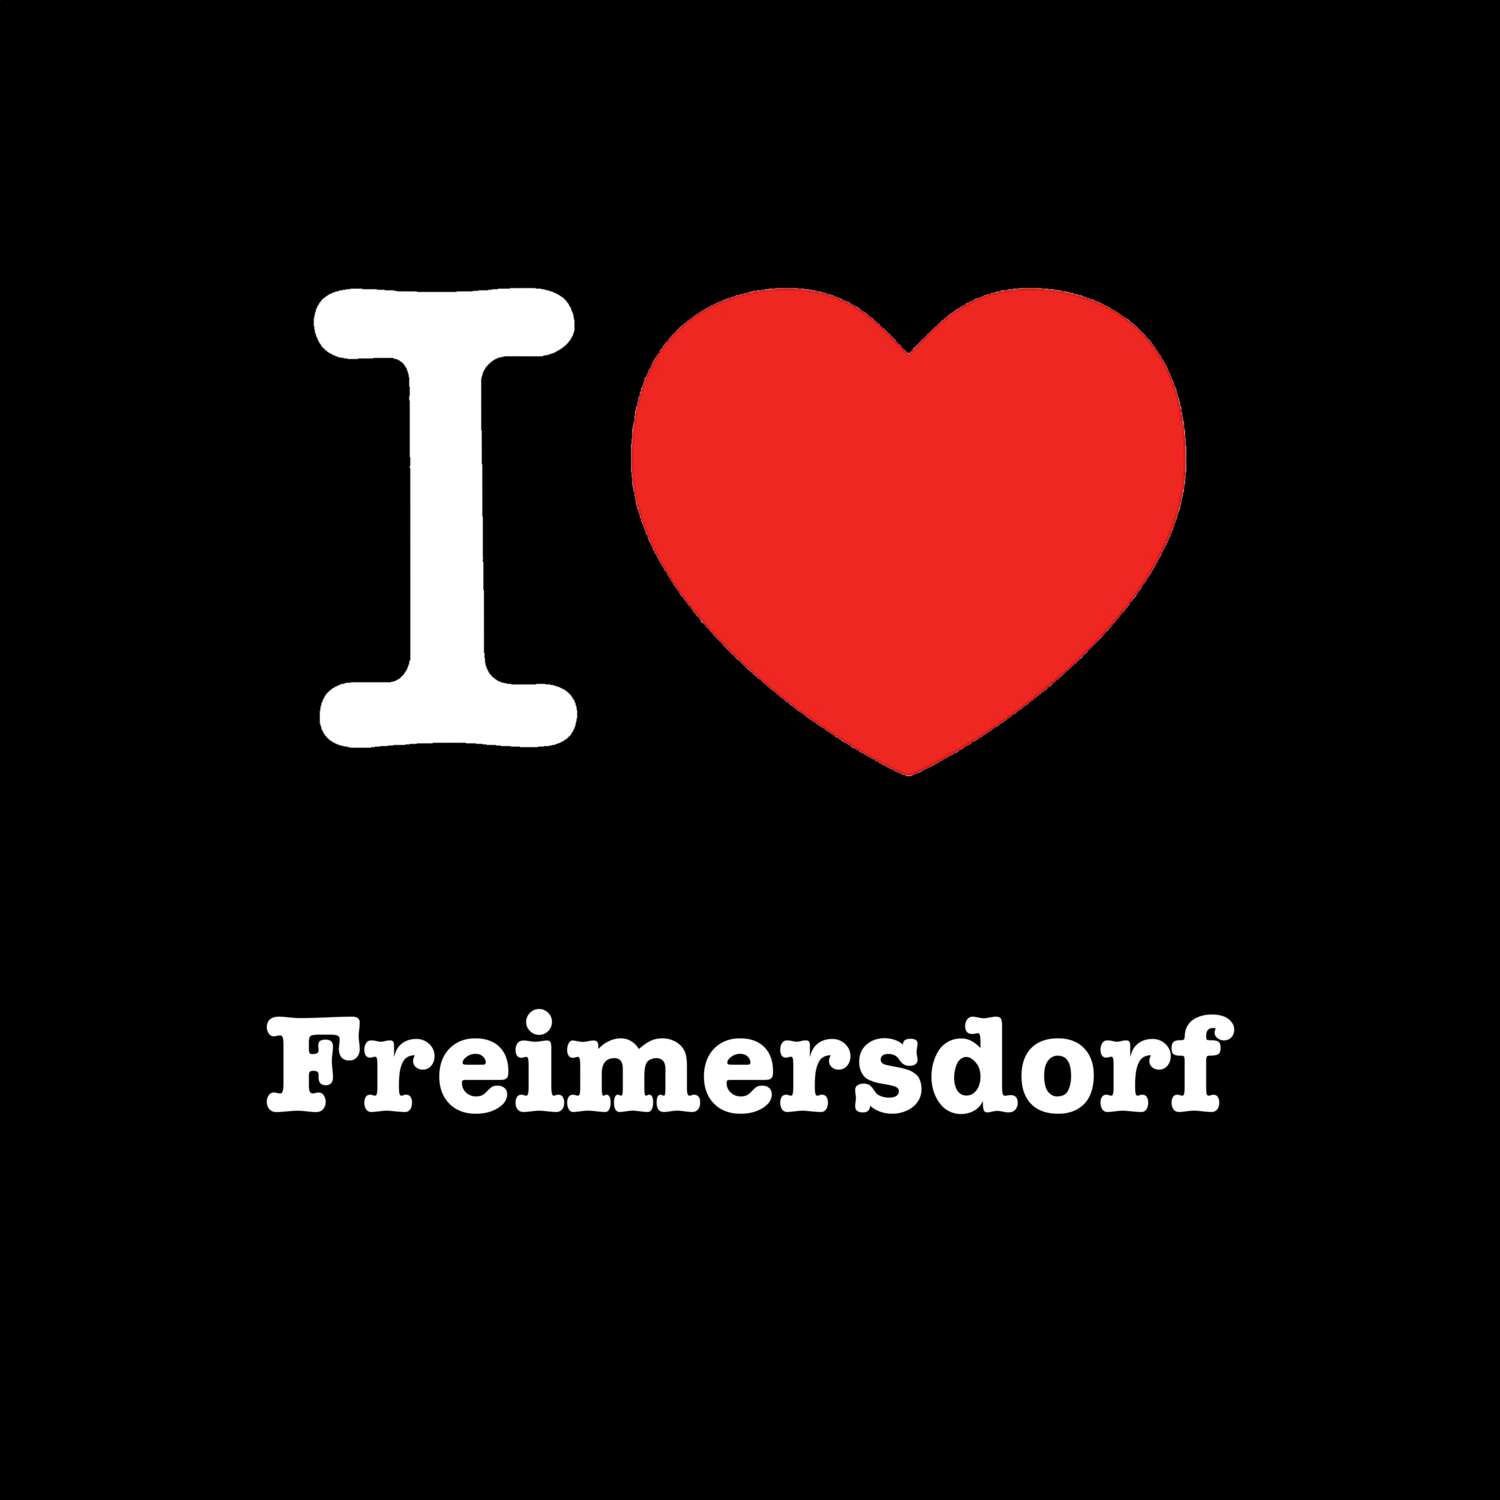 Freimersdorf T-Shirt »I love«